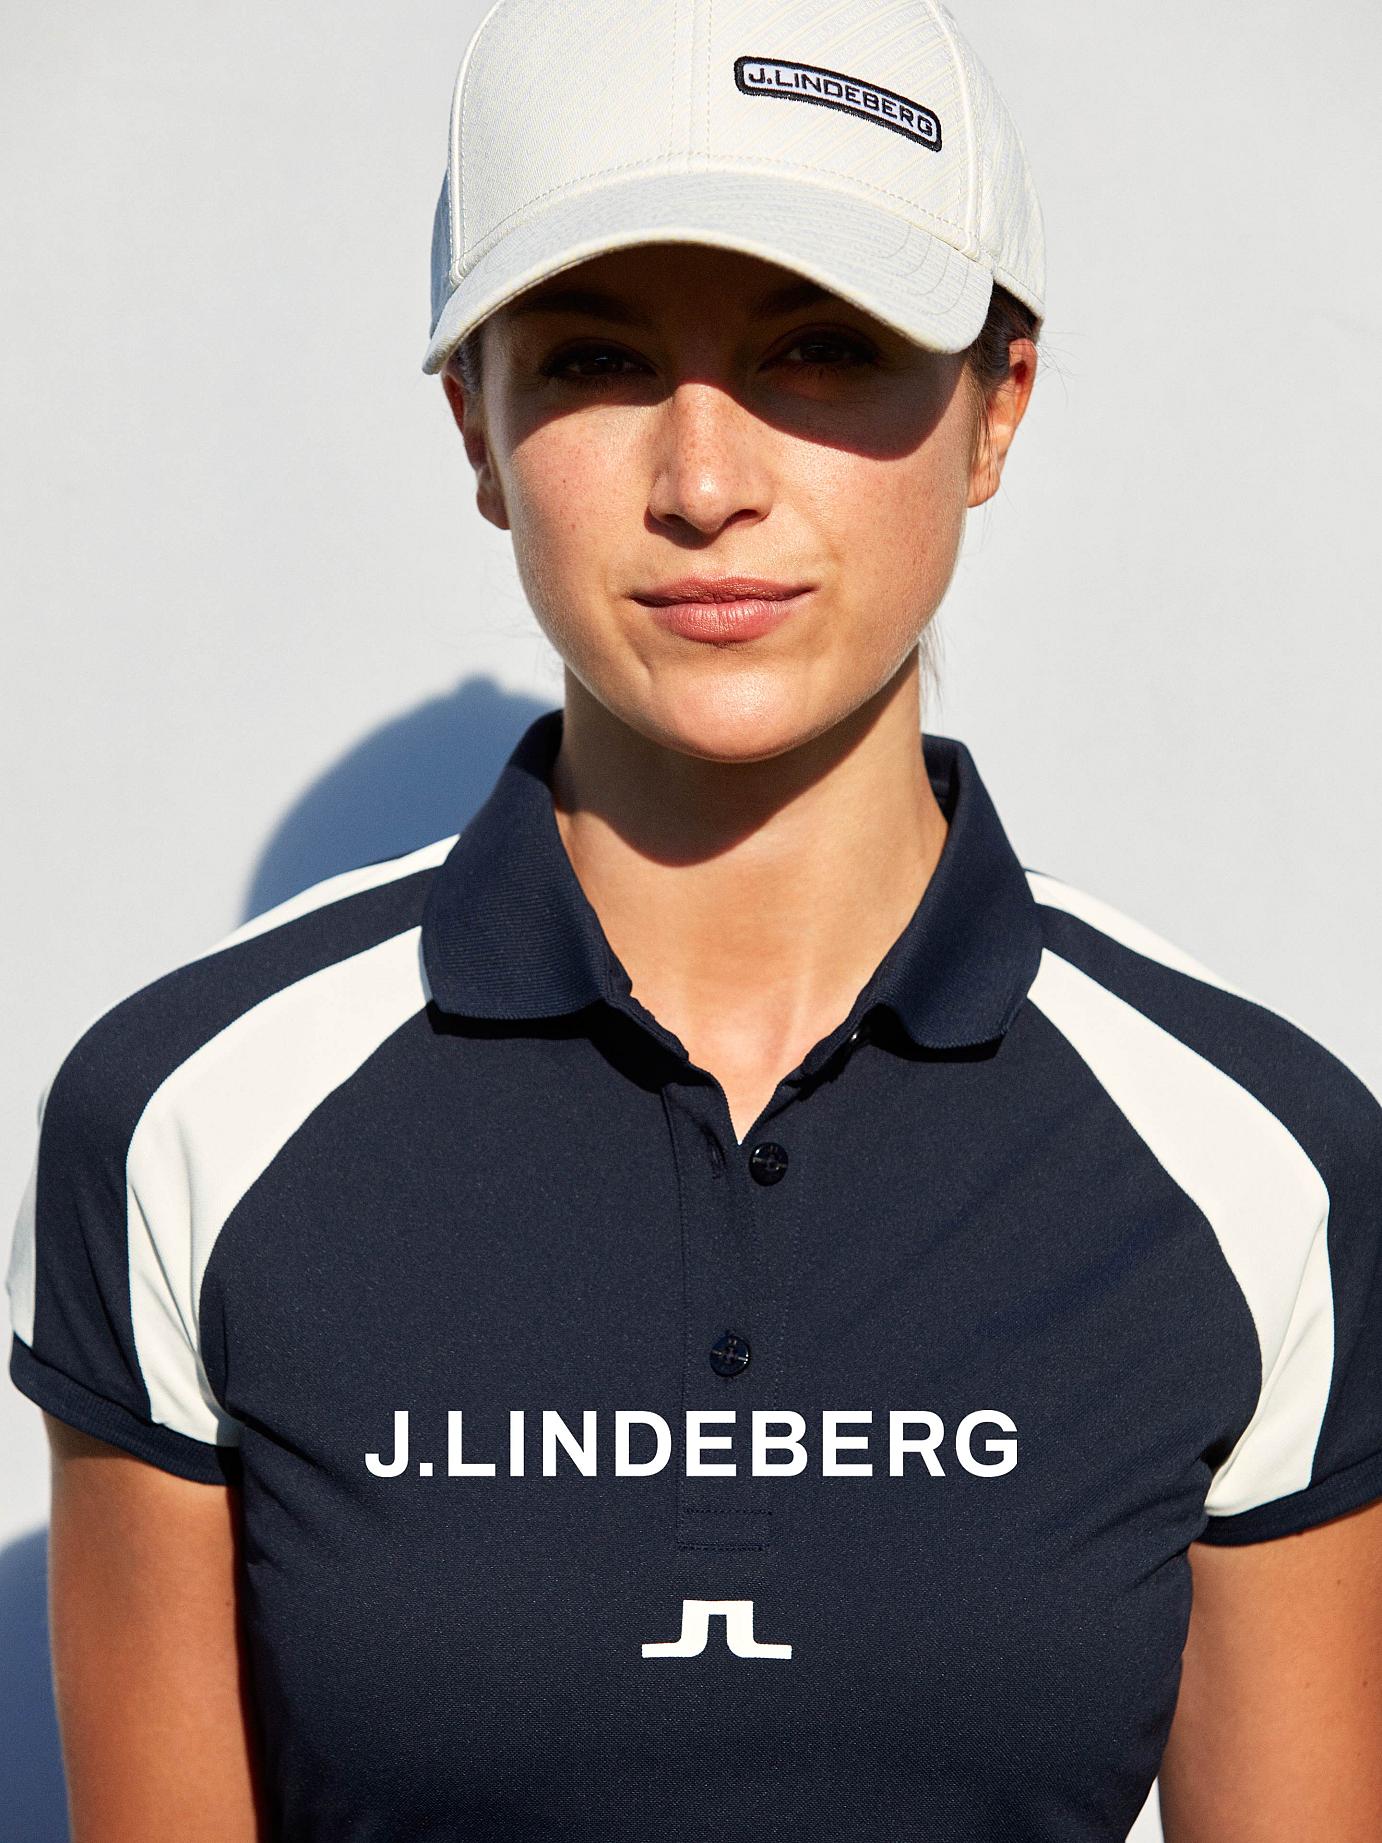 J-Lindeberg-Golf-Club